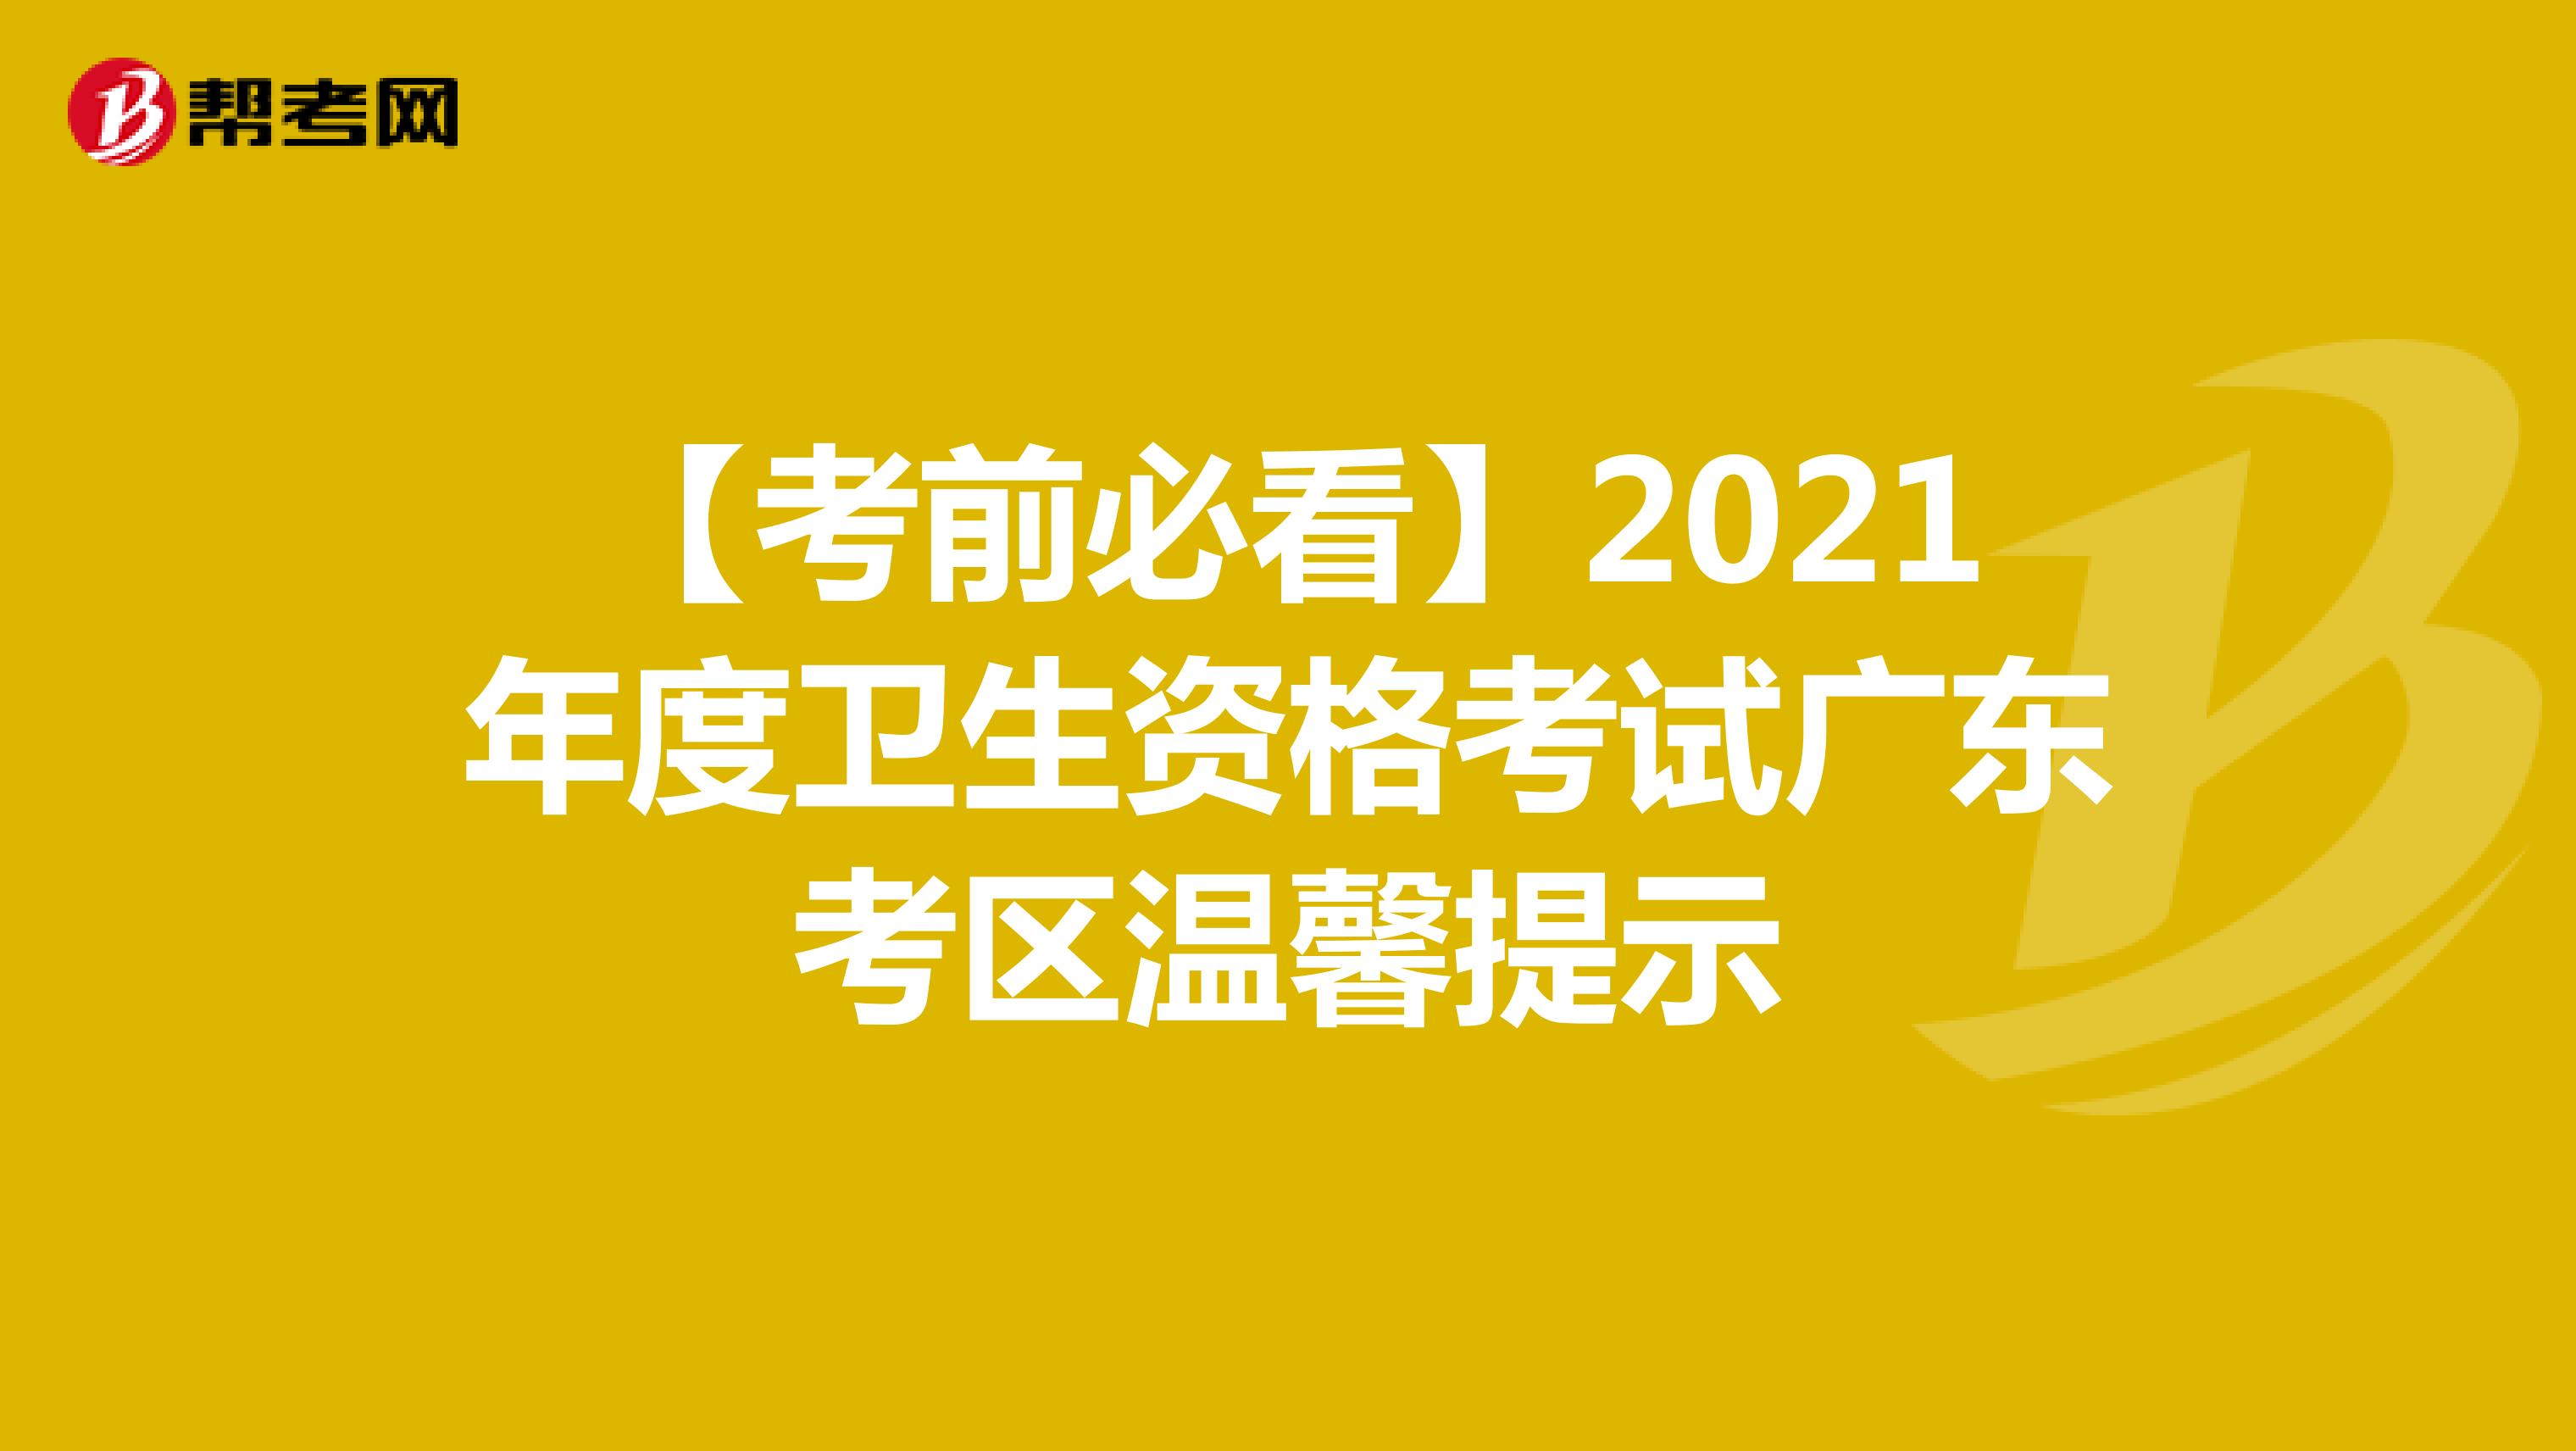 【考前必看】2021年度卫生资格考试广东考区温馨提示